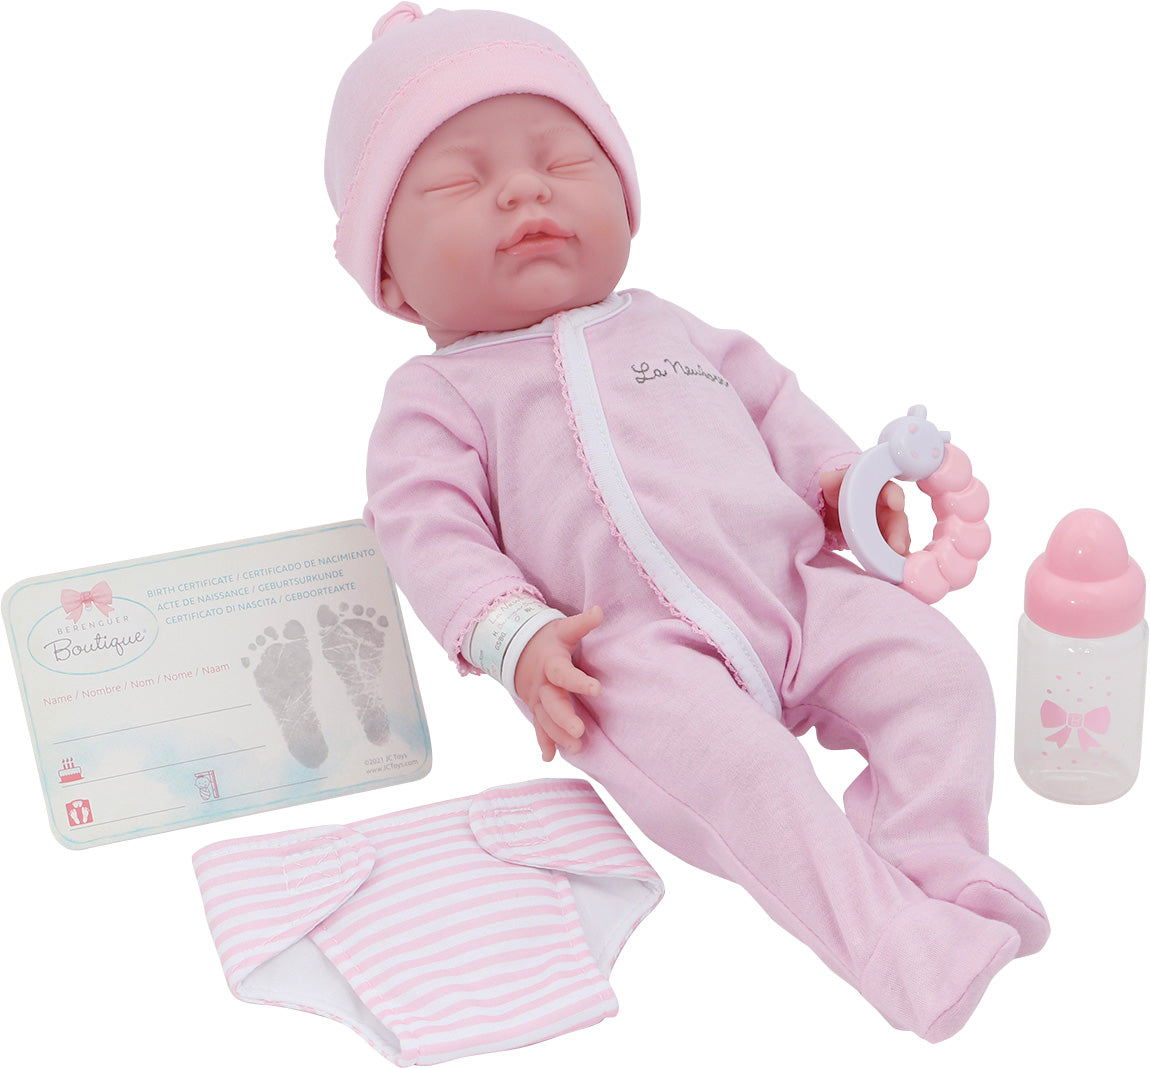 La Newborn® 17"  All-Vinyl Retro La Newborn Doll (closed Eyes) in Pink Set w/ accessories. Window Box